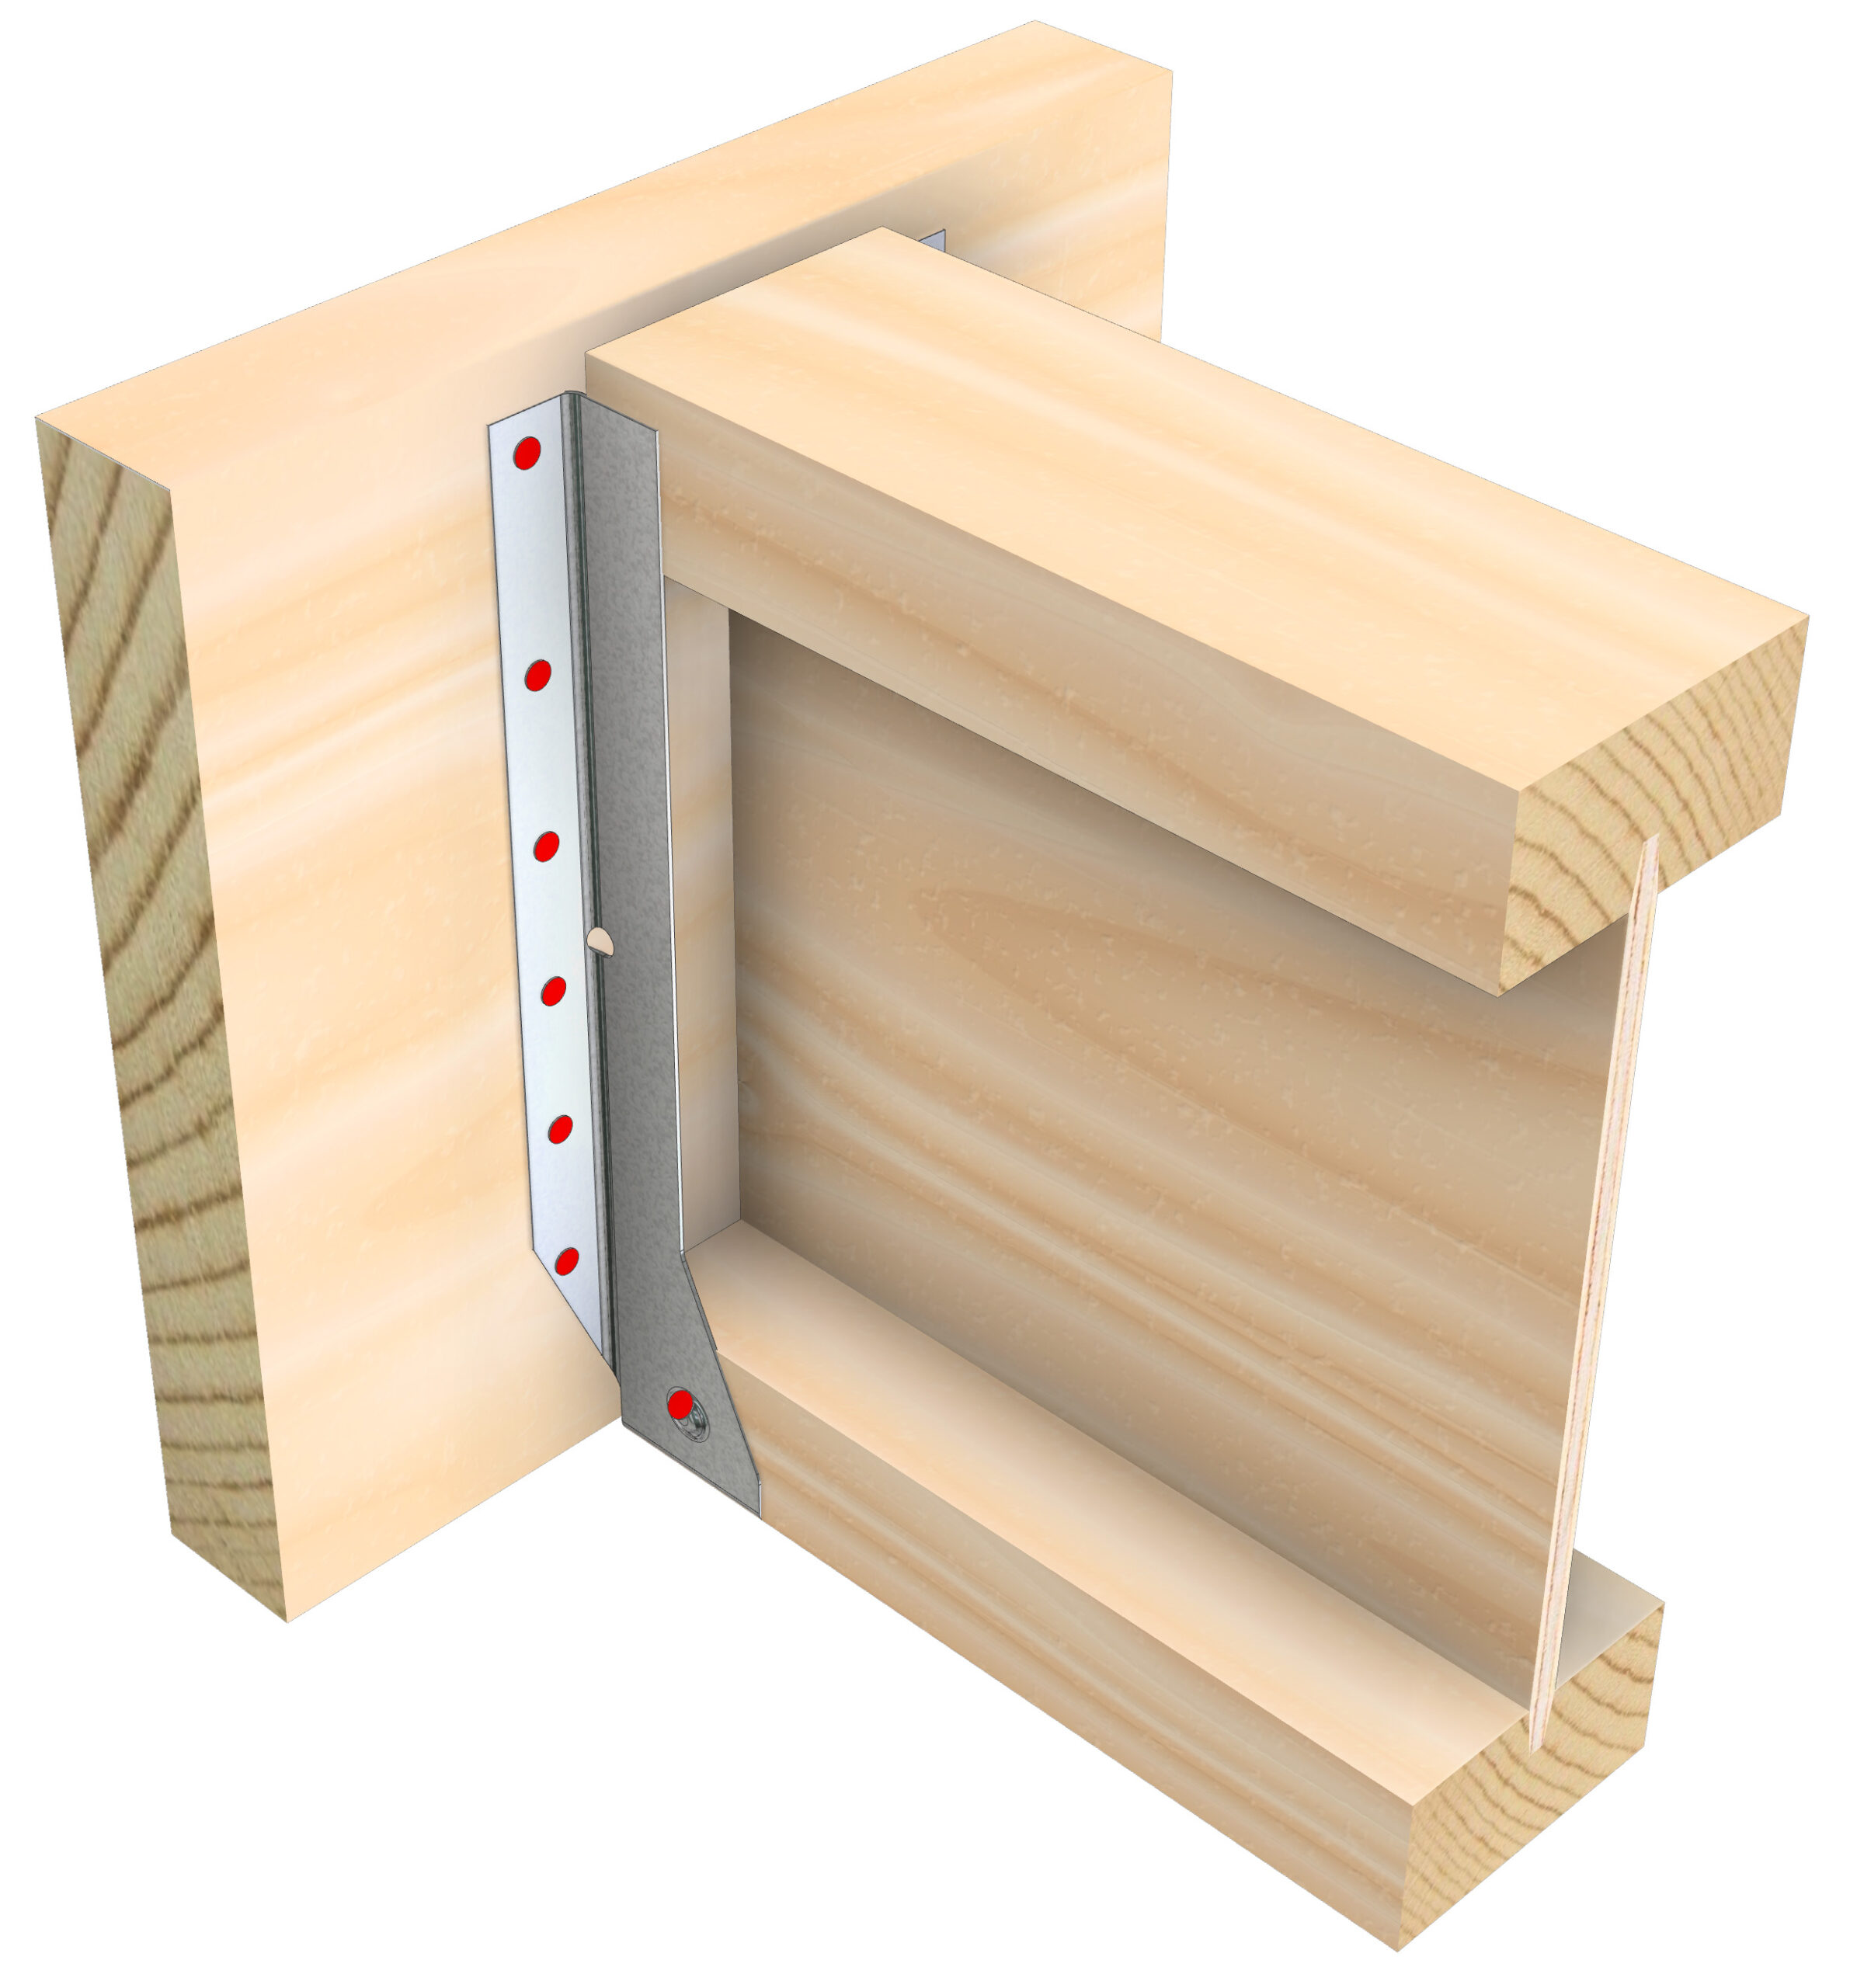 Should This Deck Framing Make Me Nervous? - Fine Homebuilding